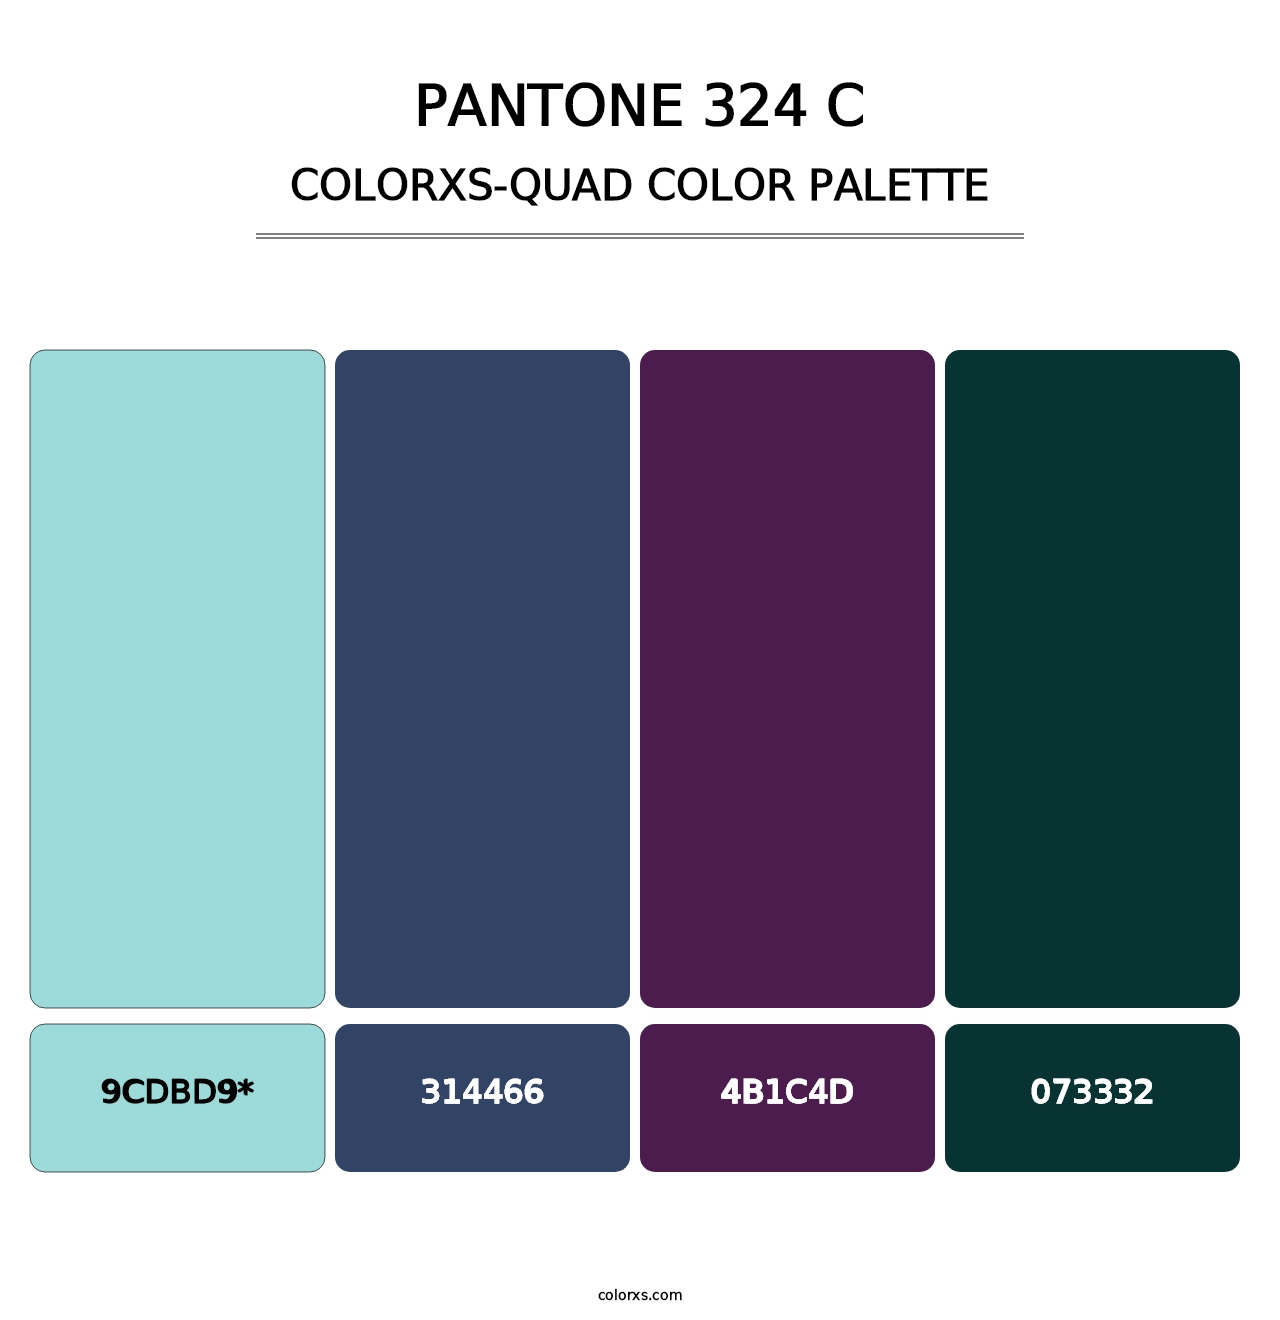 PANTONE 324 C - Colorxs Quad Palette